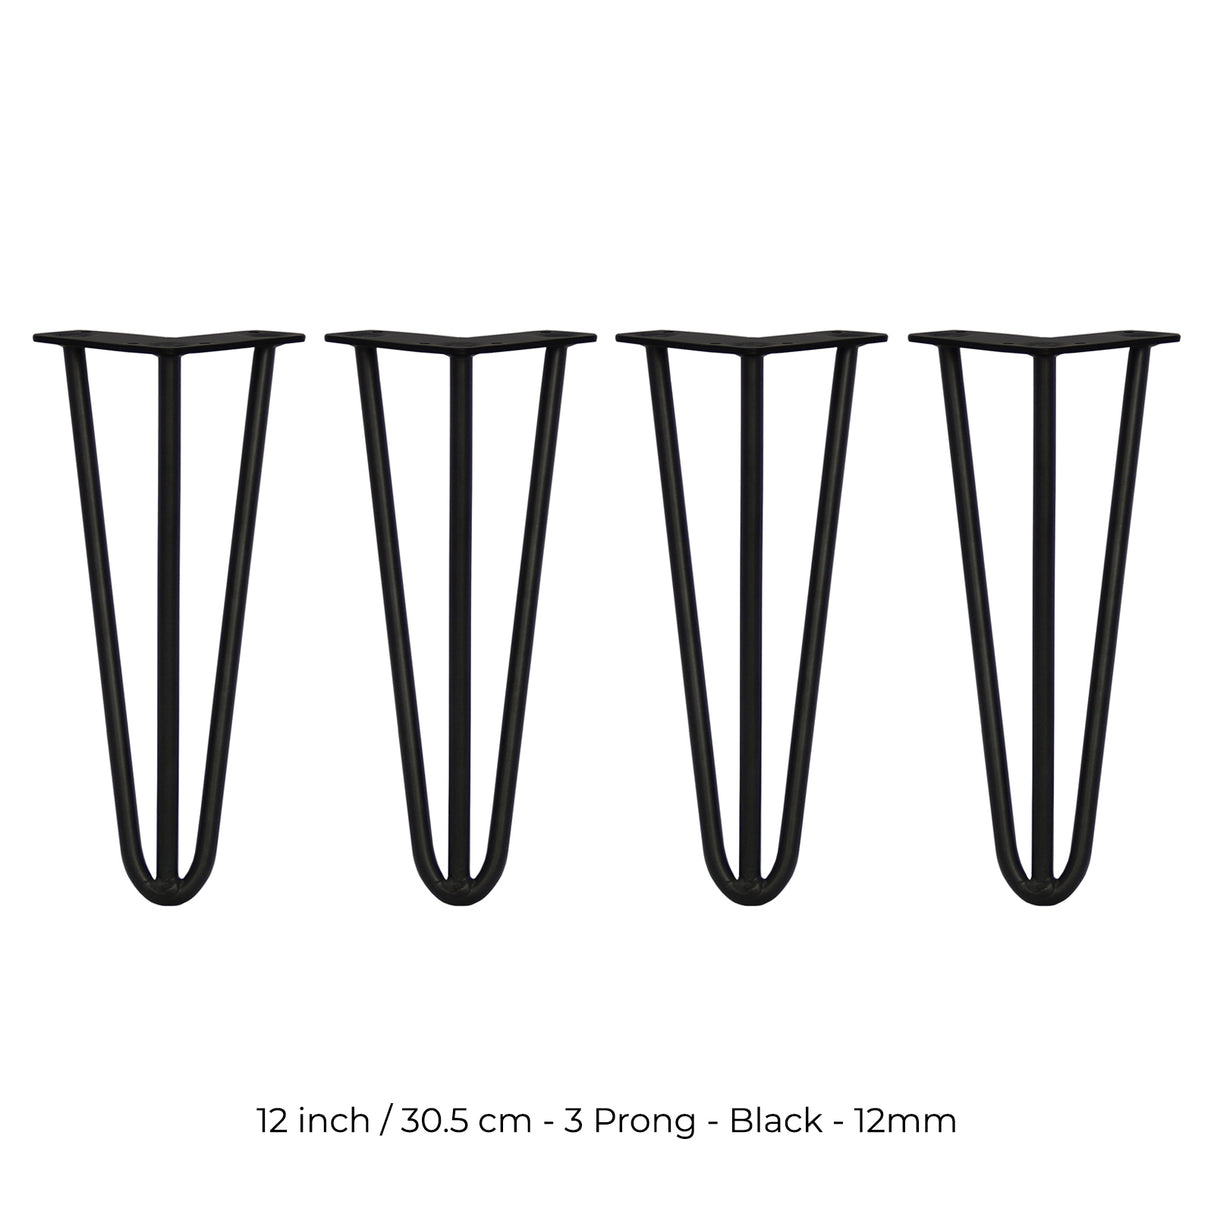 4 Patas de Horquilla SkiSki Legs 30,5cm Acero Negro 3 Dientes 12mm